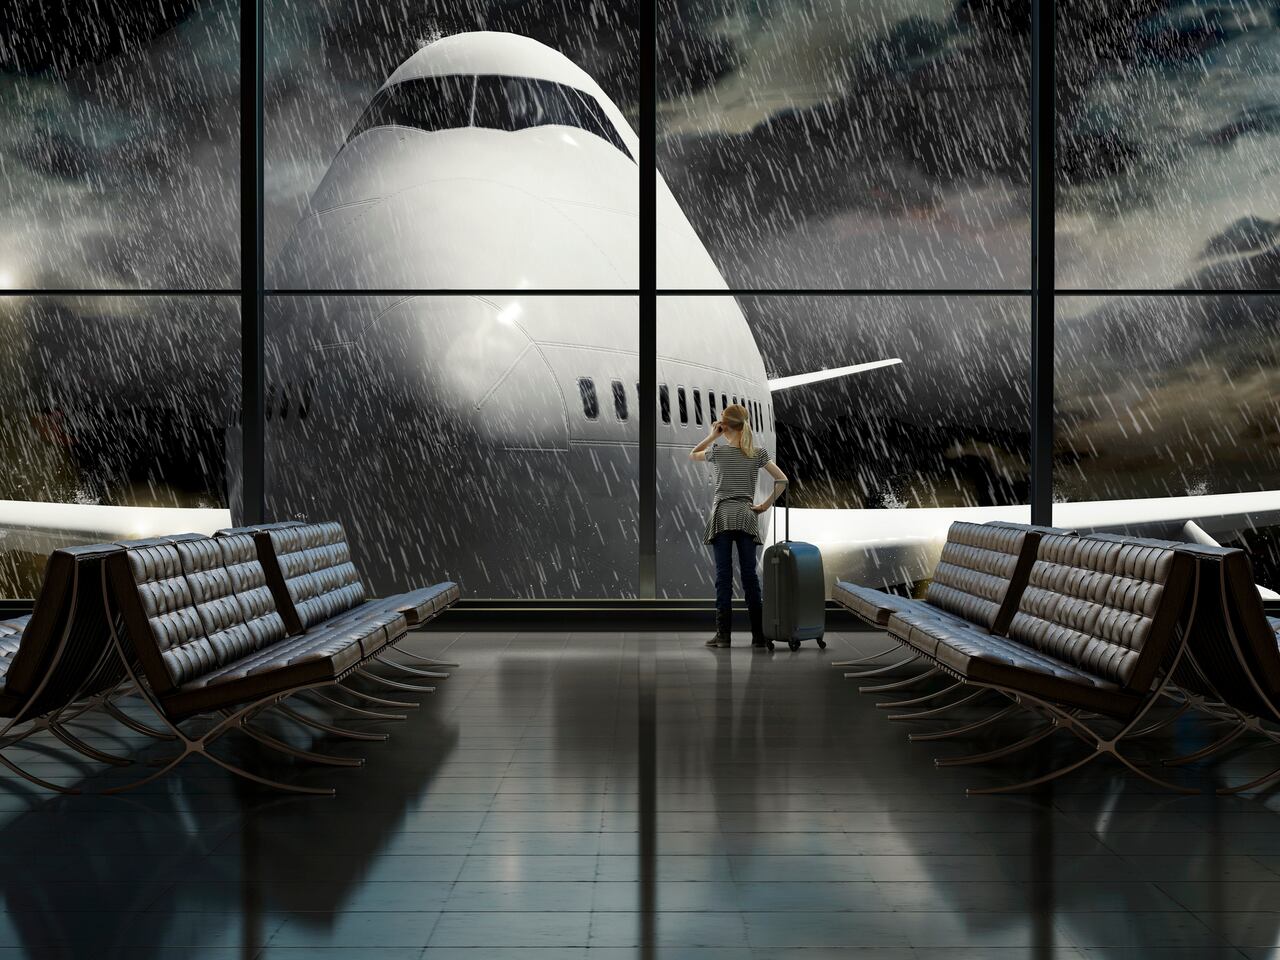 Aeropuerto con lluvias